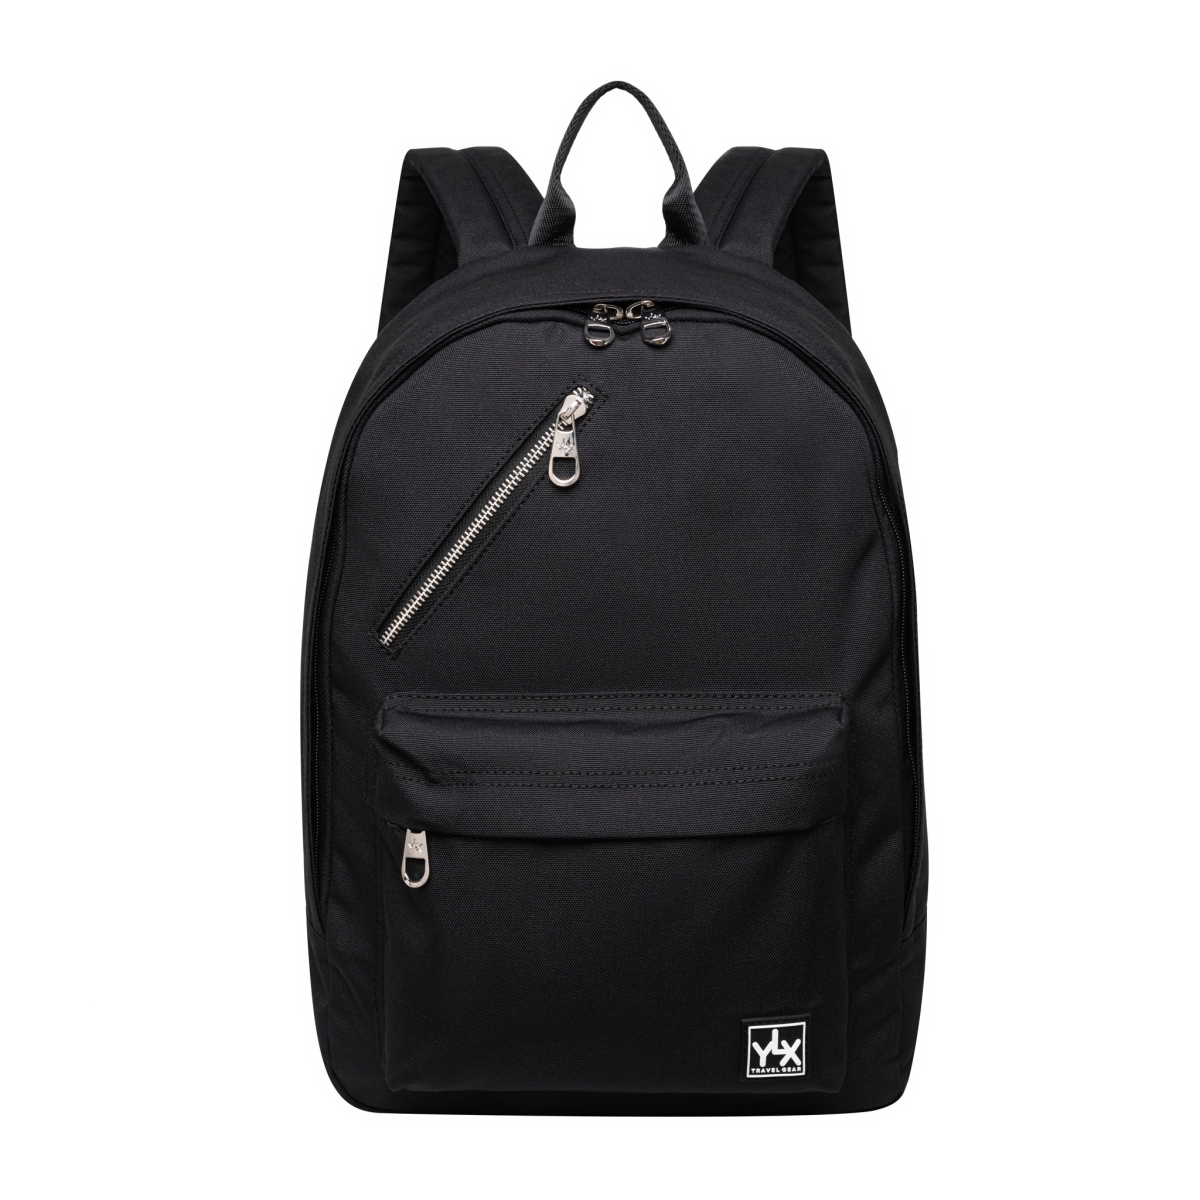 YLX Cornel Backpack